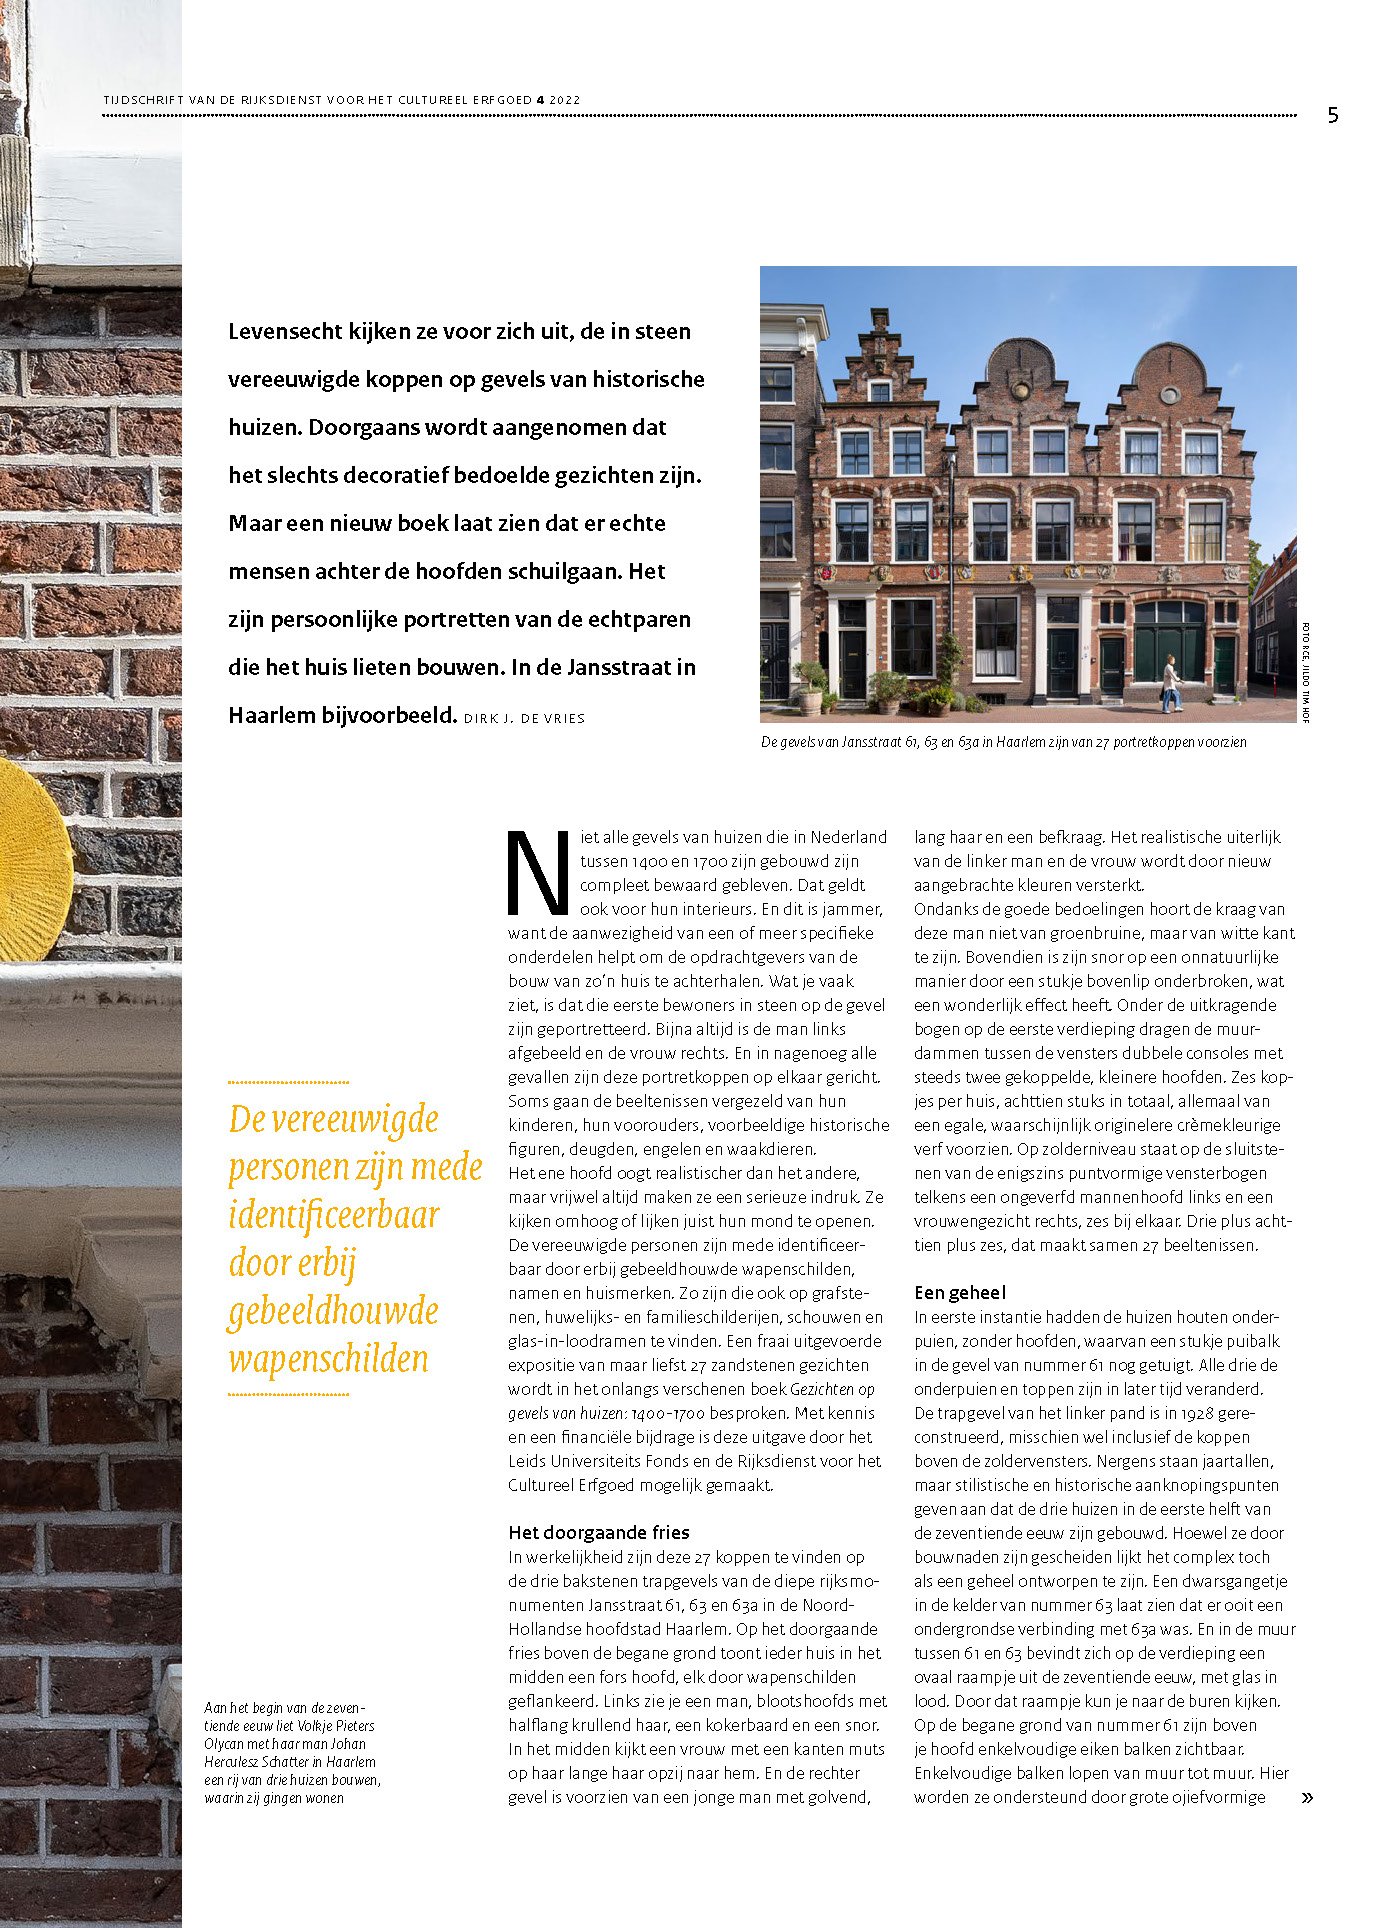 Tijdschrift van de Rijksdienst voor het Cultureel Erfgoed, november 2022 4.jpg